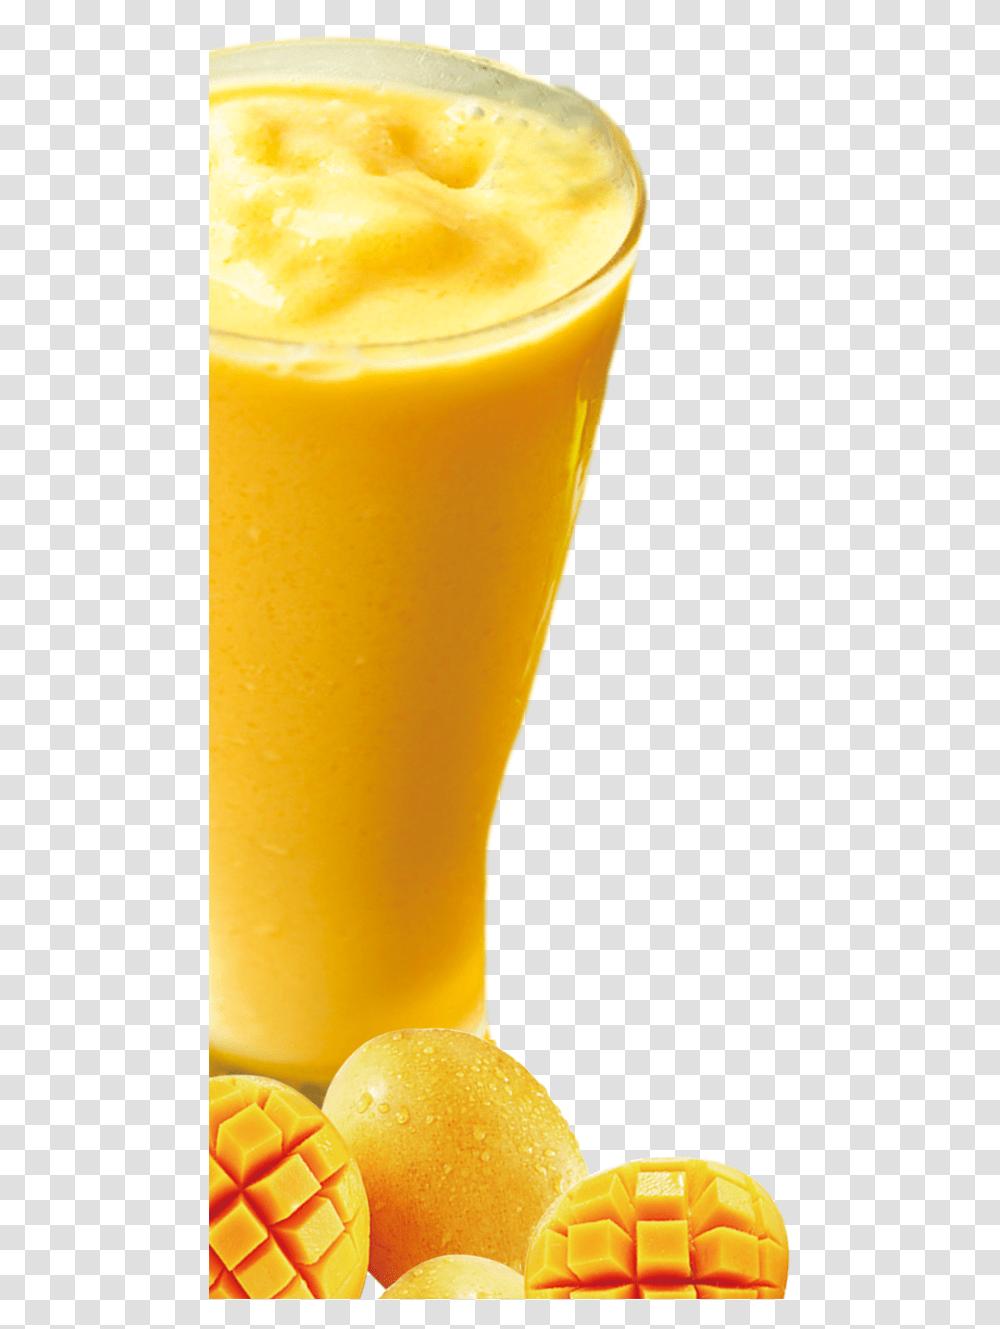 Orange Juice Milkshake Smoothie Mango Shake Free, Beverage, Drink, Citrus Fruit, Plant Transparent Png